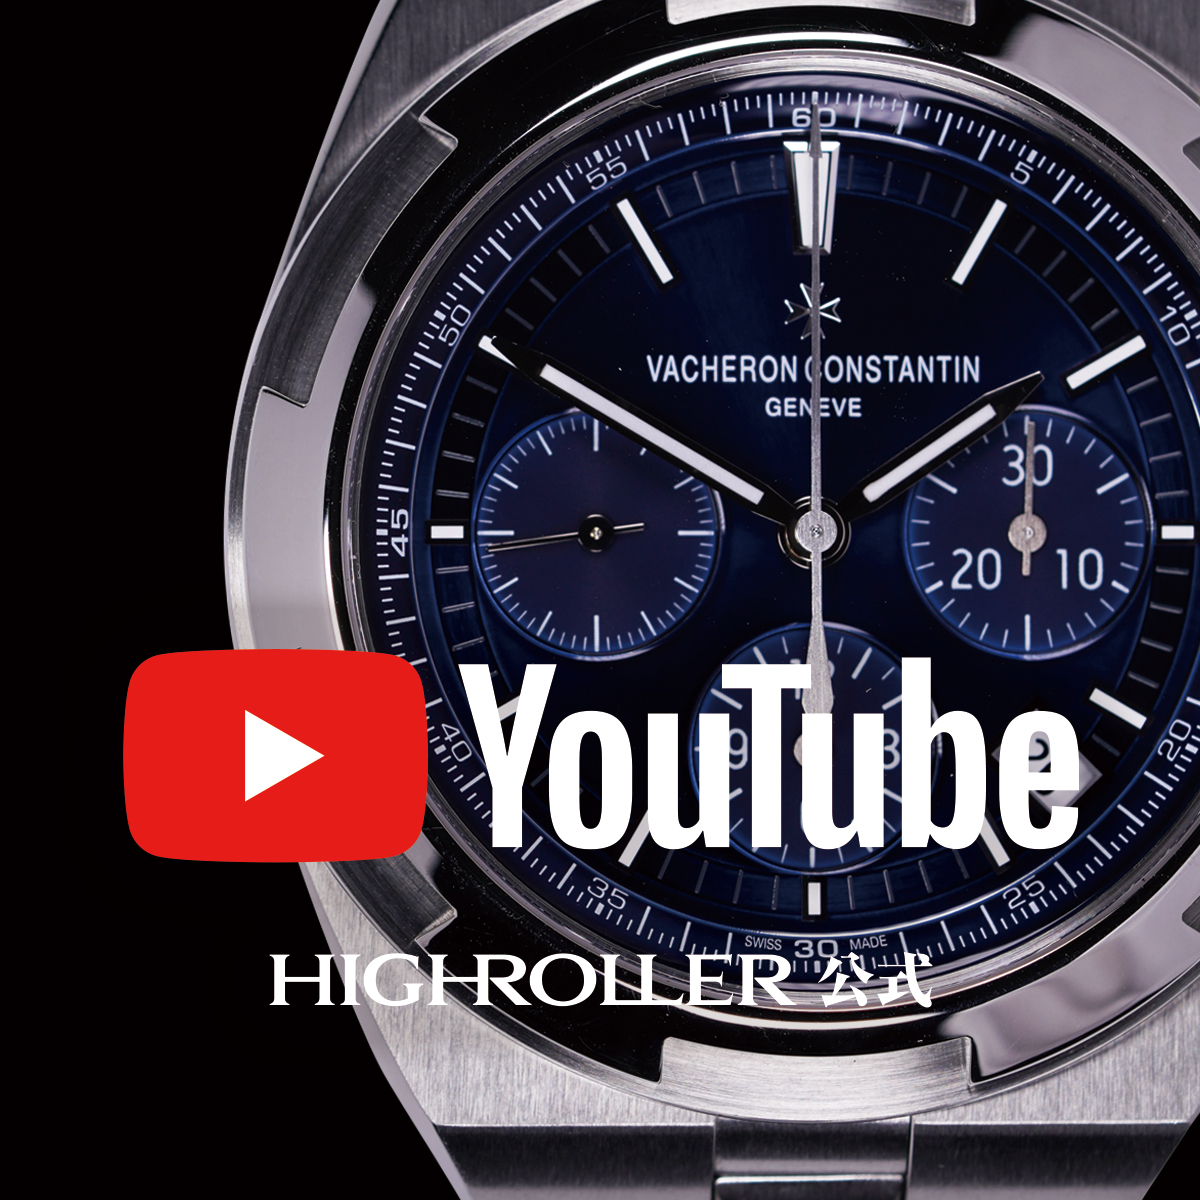 高級ブランド腕時計専門店 HIGH ROLLER（ハイローラー） 公式YouTubeチャンネル